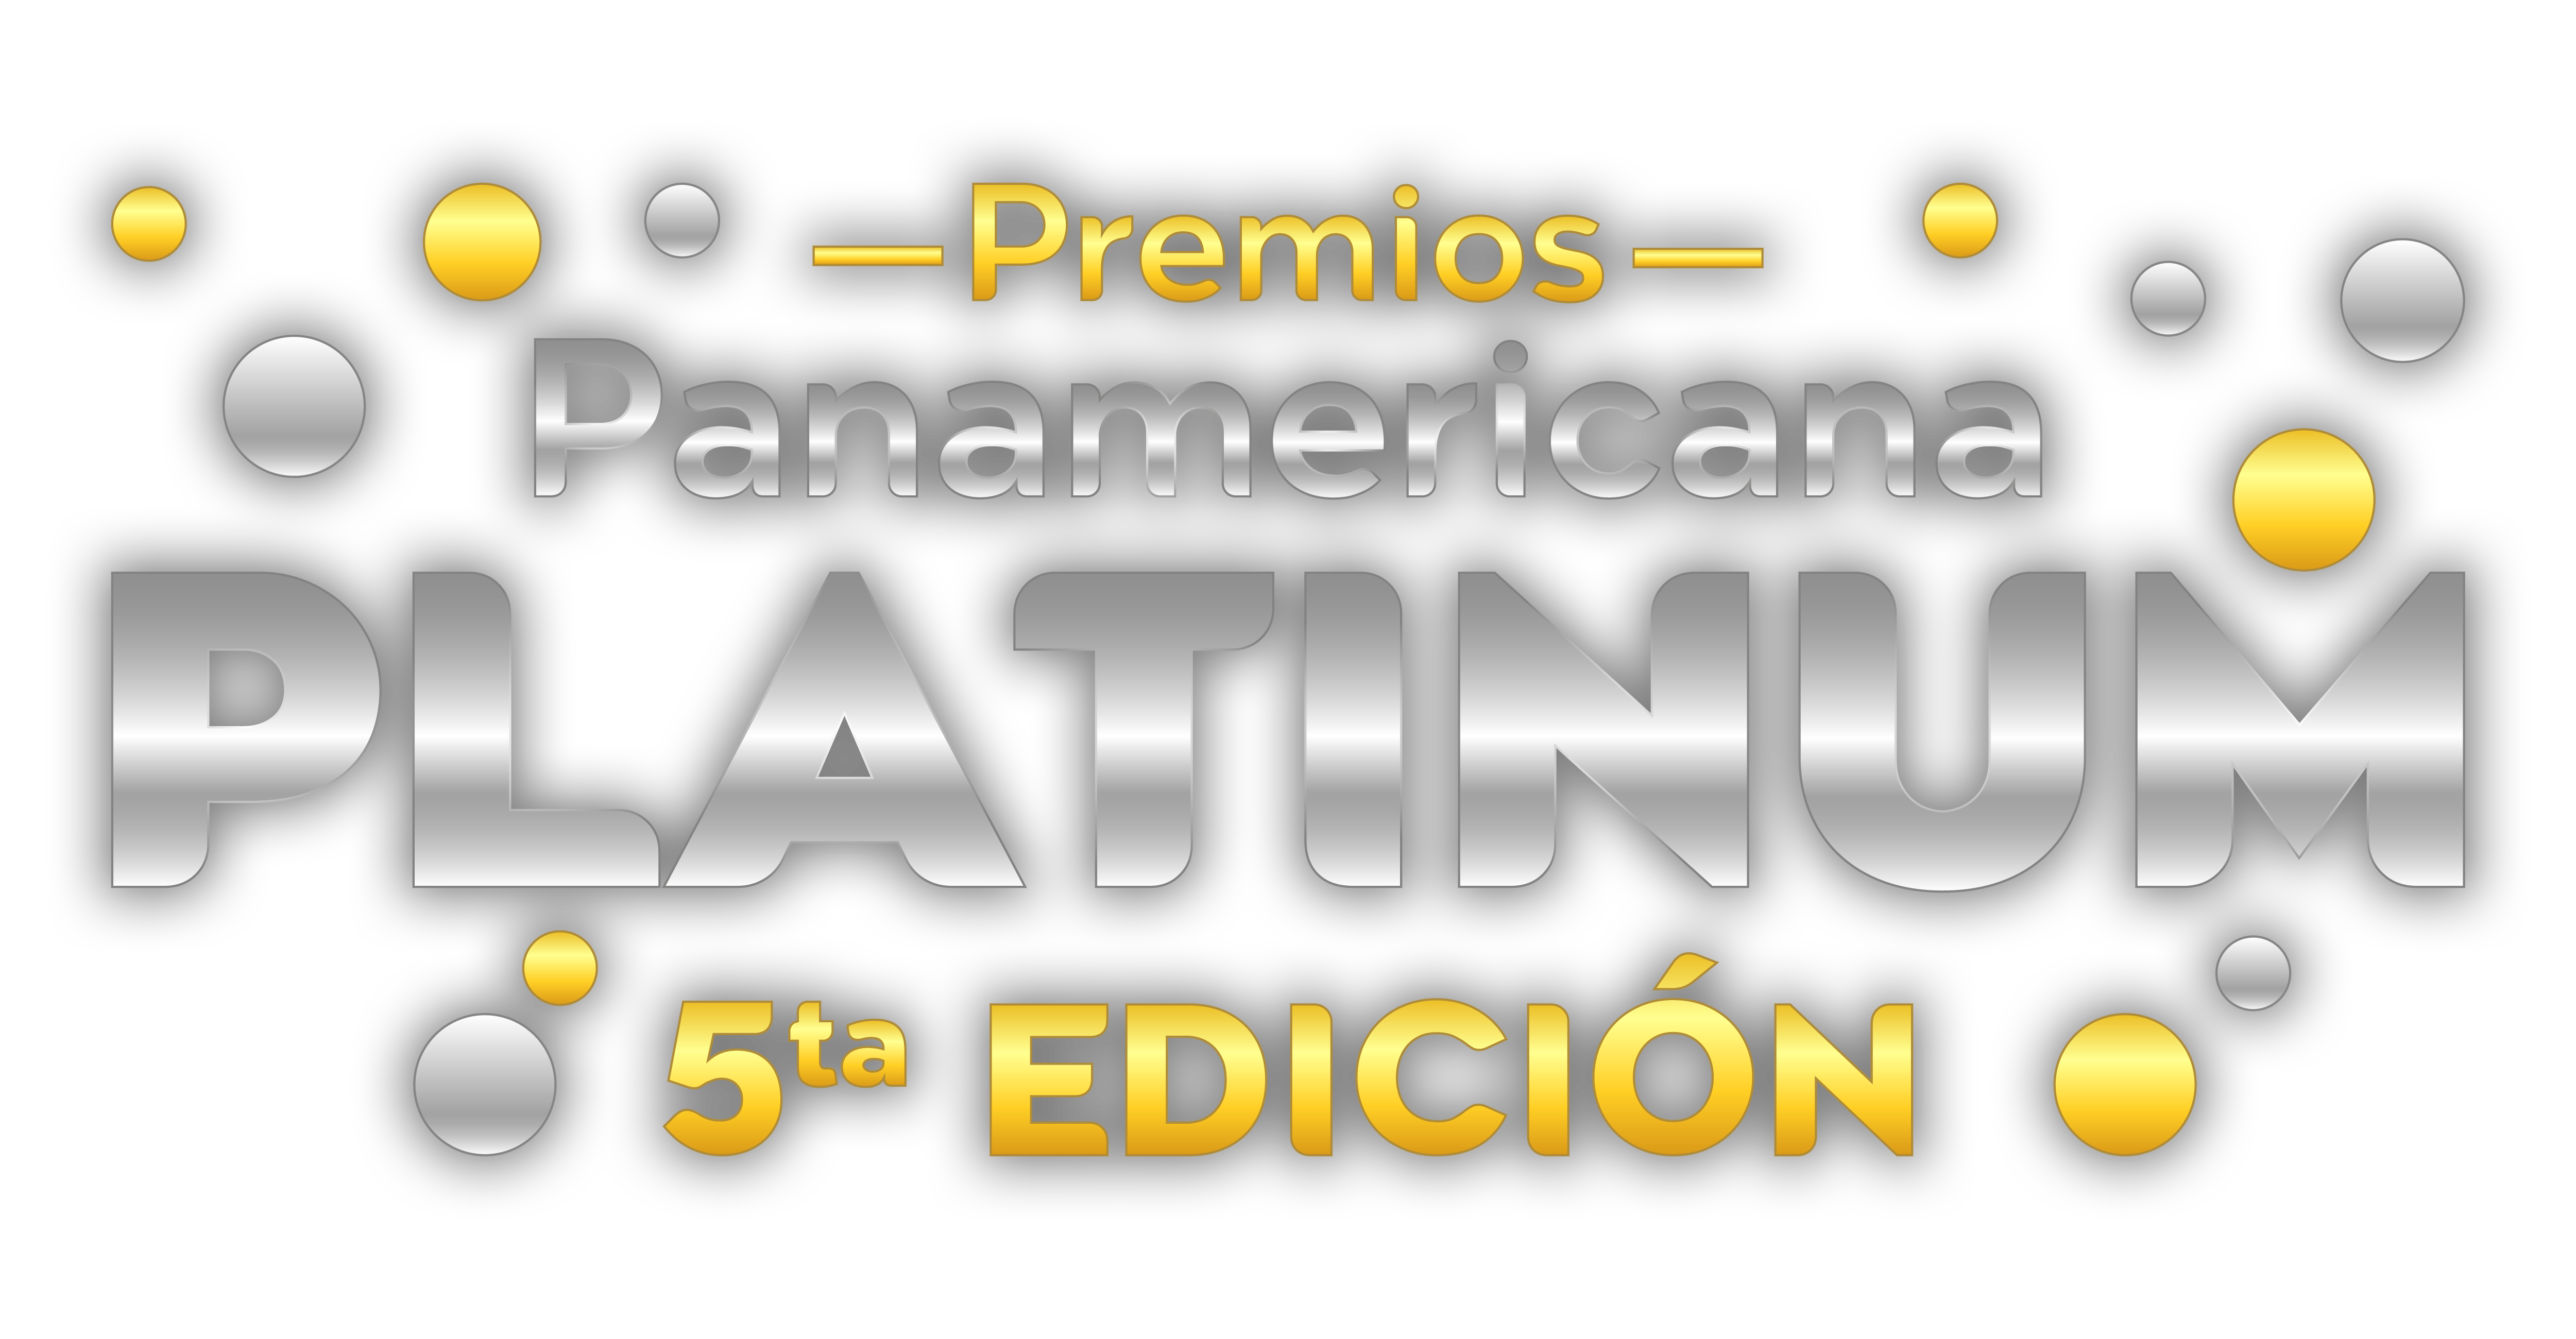 Radio Panamericana Premios Platinum